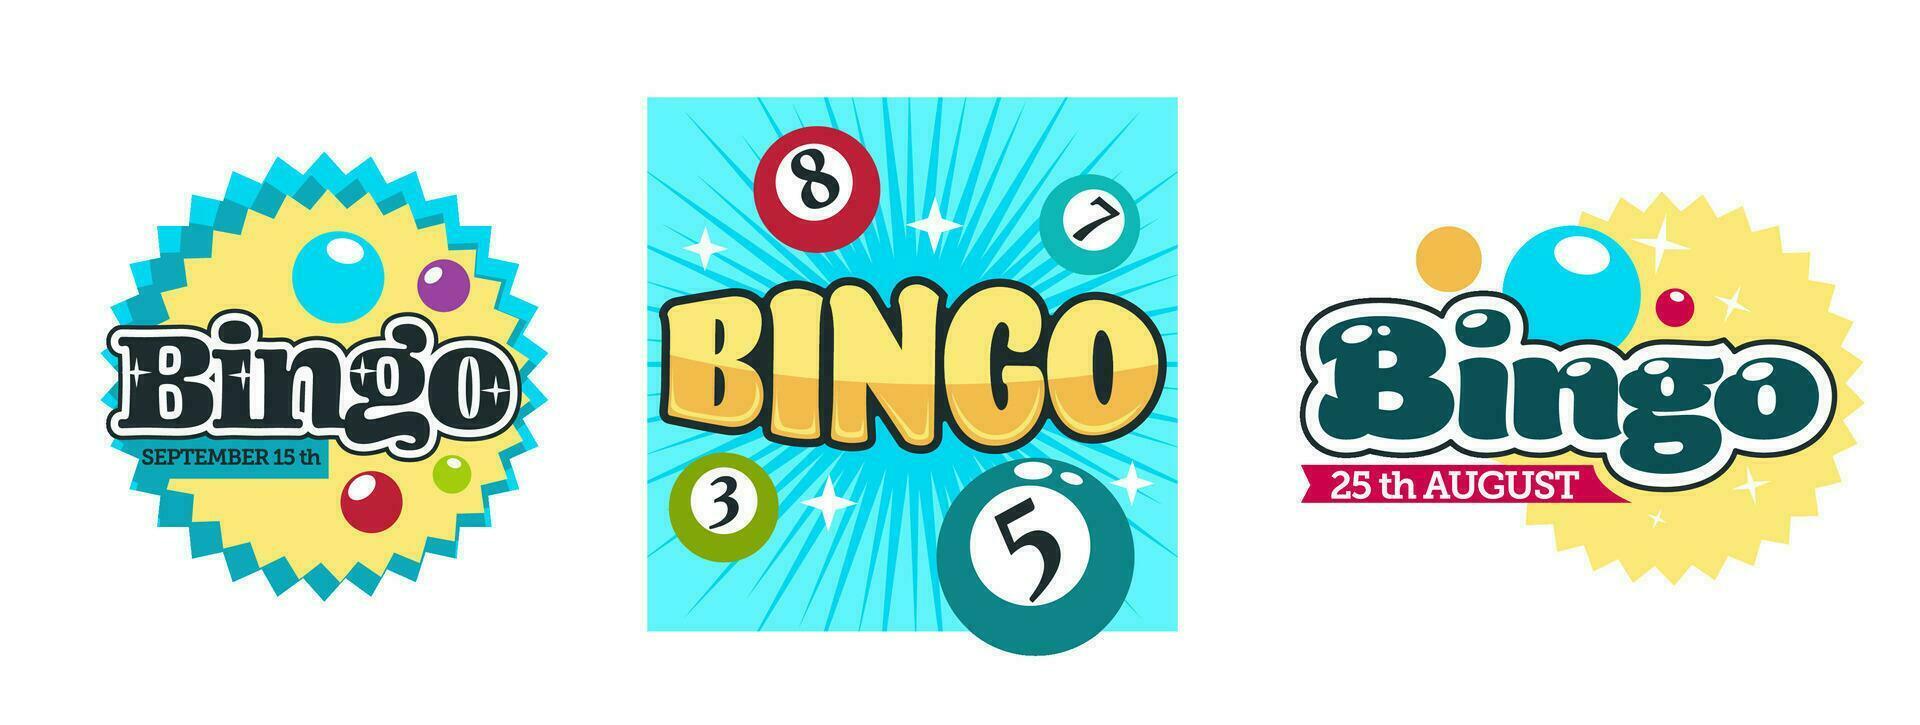 Bingo sorte, ganhando dentro jogos de azar jogando em dinheiro vetor